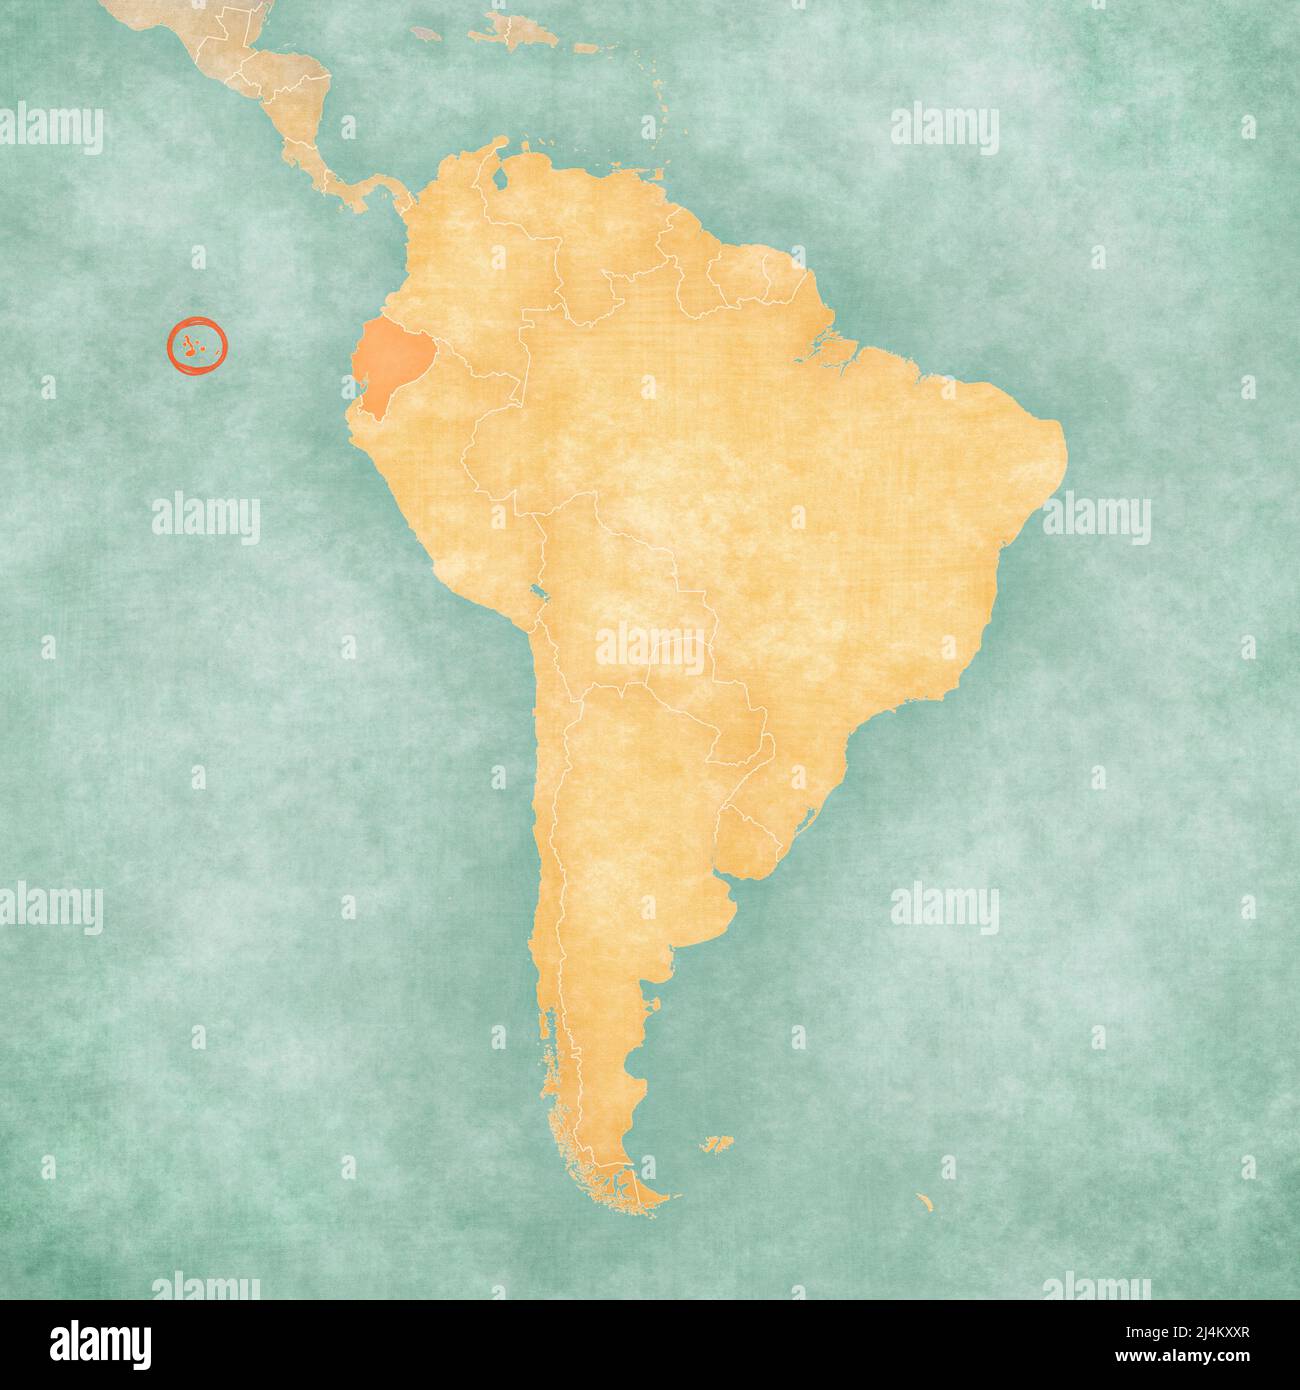 Isole Galapagos (Ecuador) sulla mappa del Sud America in morbido grunge e vintage stile, come carta vecchia con acquerello pittura. Foto Stock